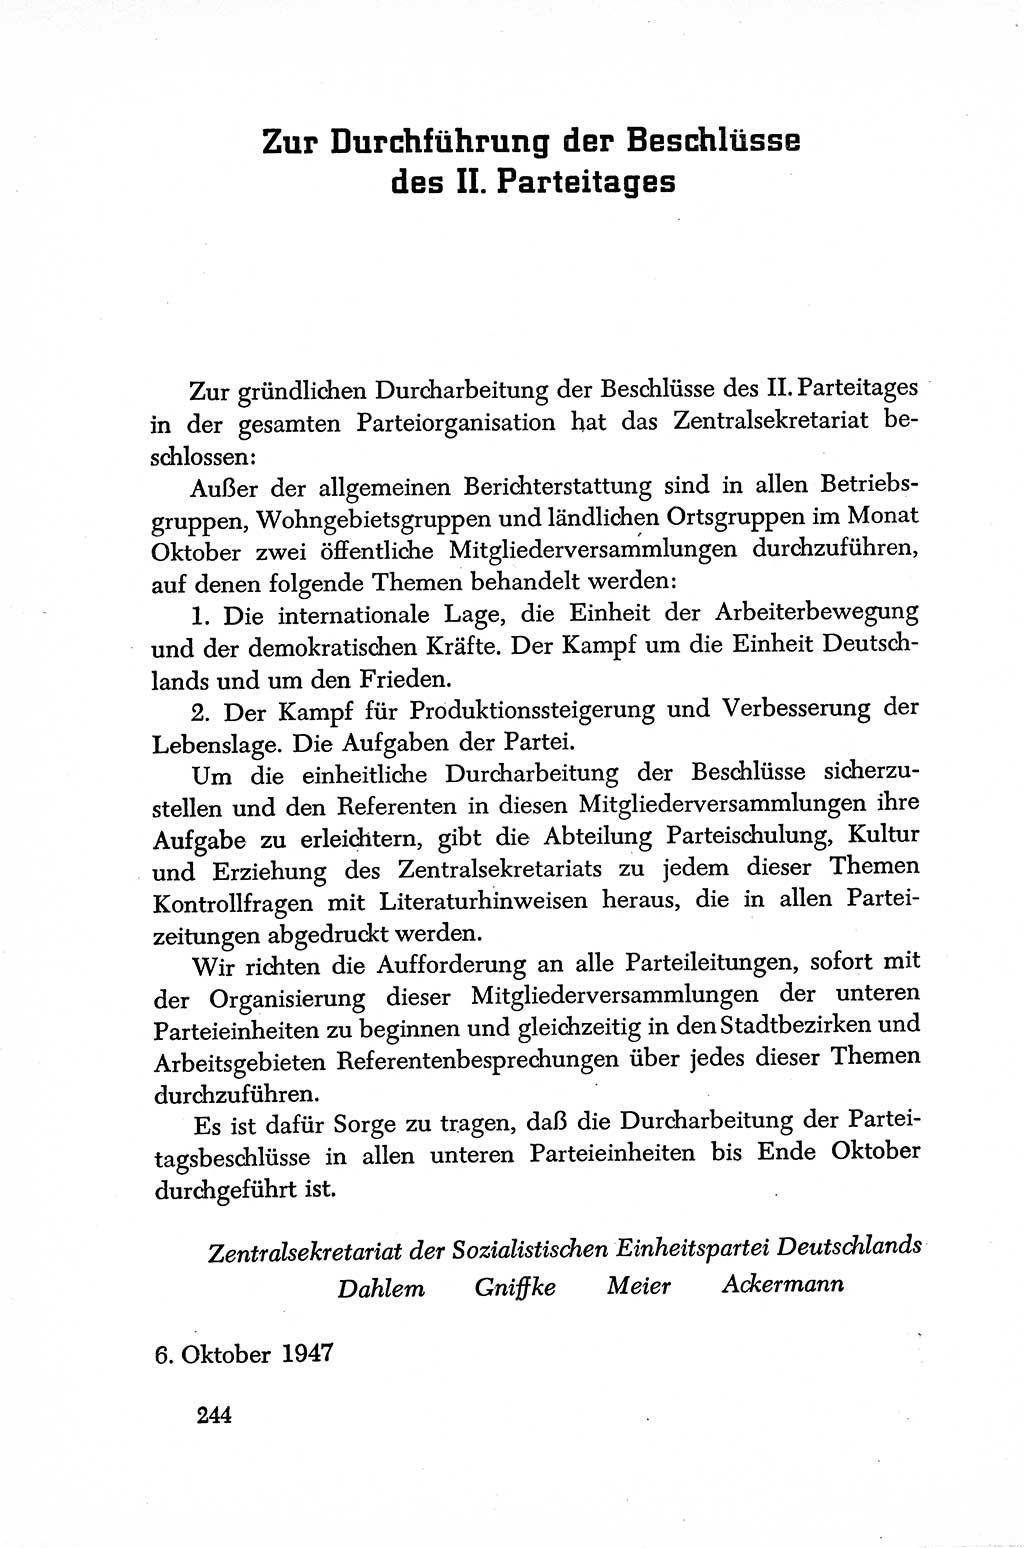 Dokumente der Sozialistischen Einheitspartei Deutschlands (SED) [Sowjetische Besatzungszone (SBZ) Deutschlands] 1946-1948, Seite 244 (Dok. SED SBZ Dtl. 1946-1948, S. 244)